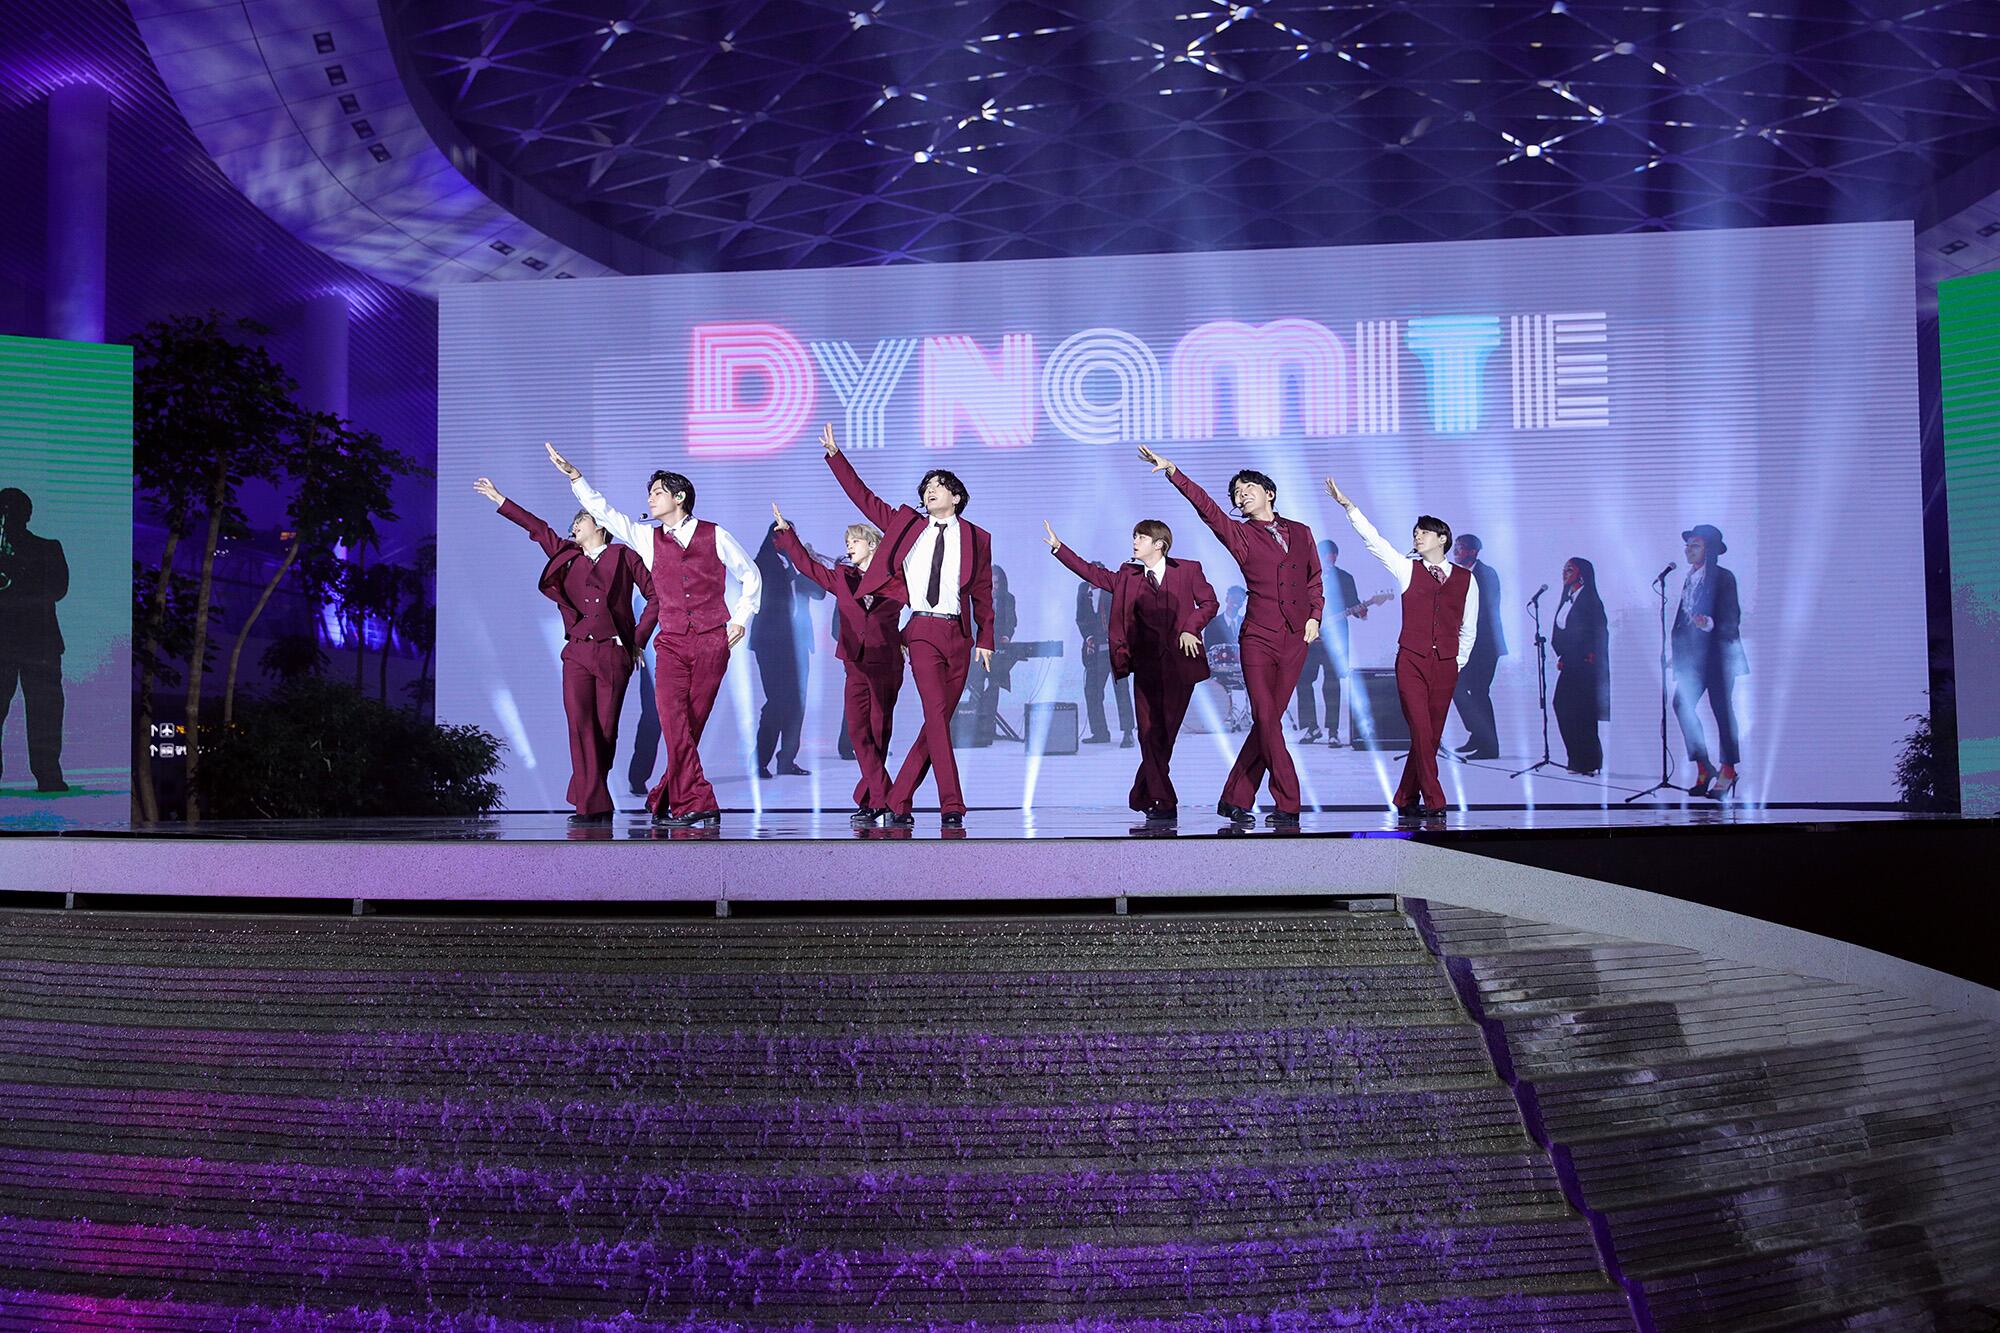 A sign reads "Dynamite" as K-pop band BTS dances.